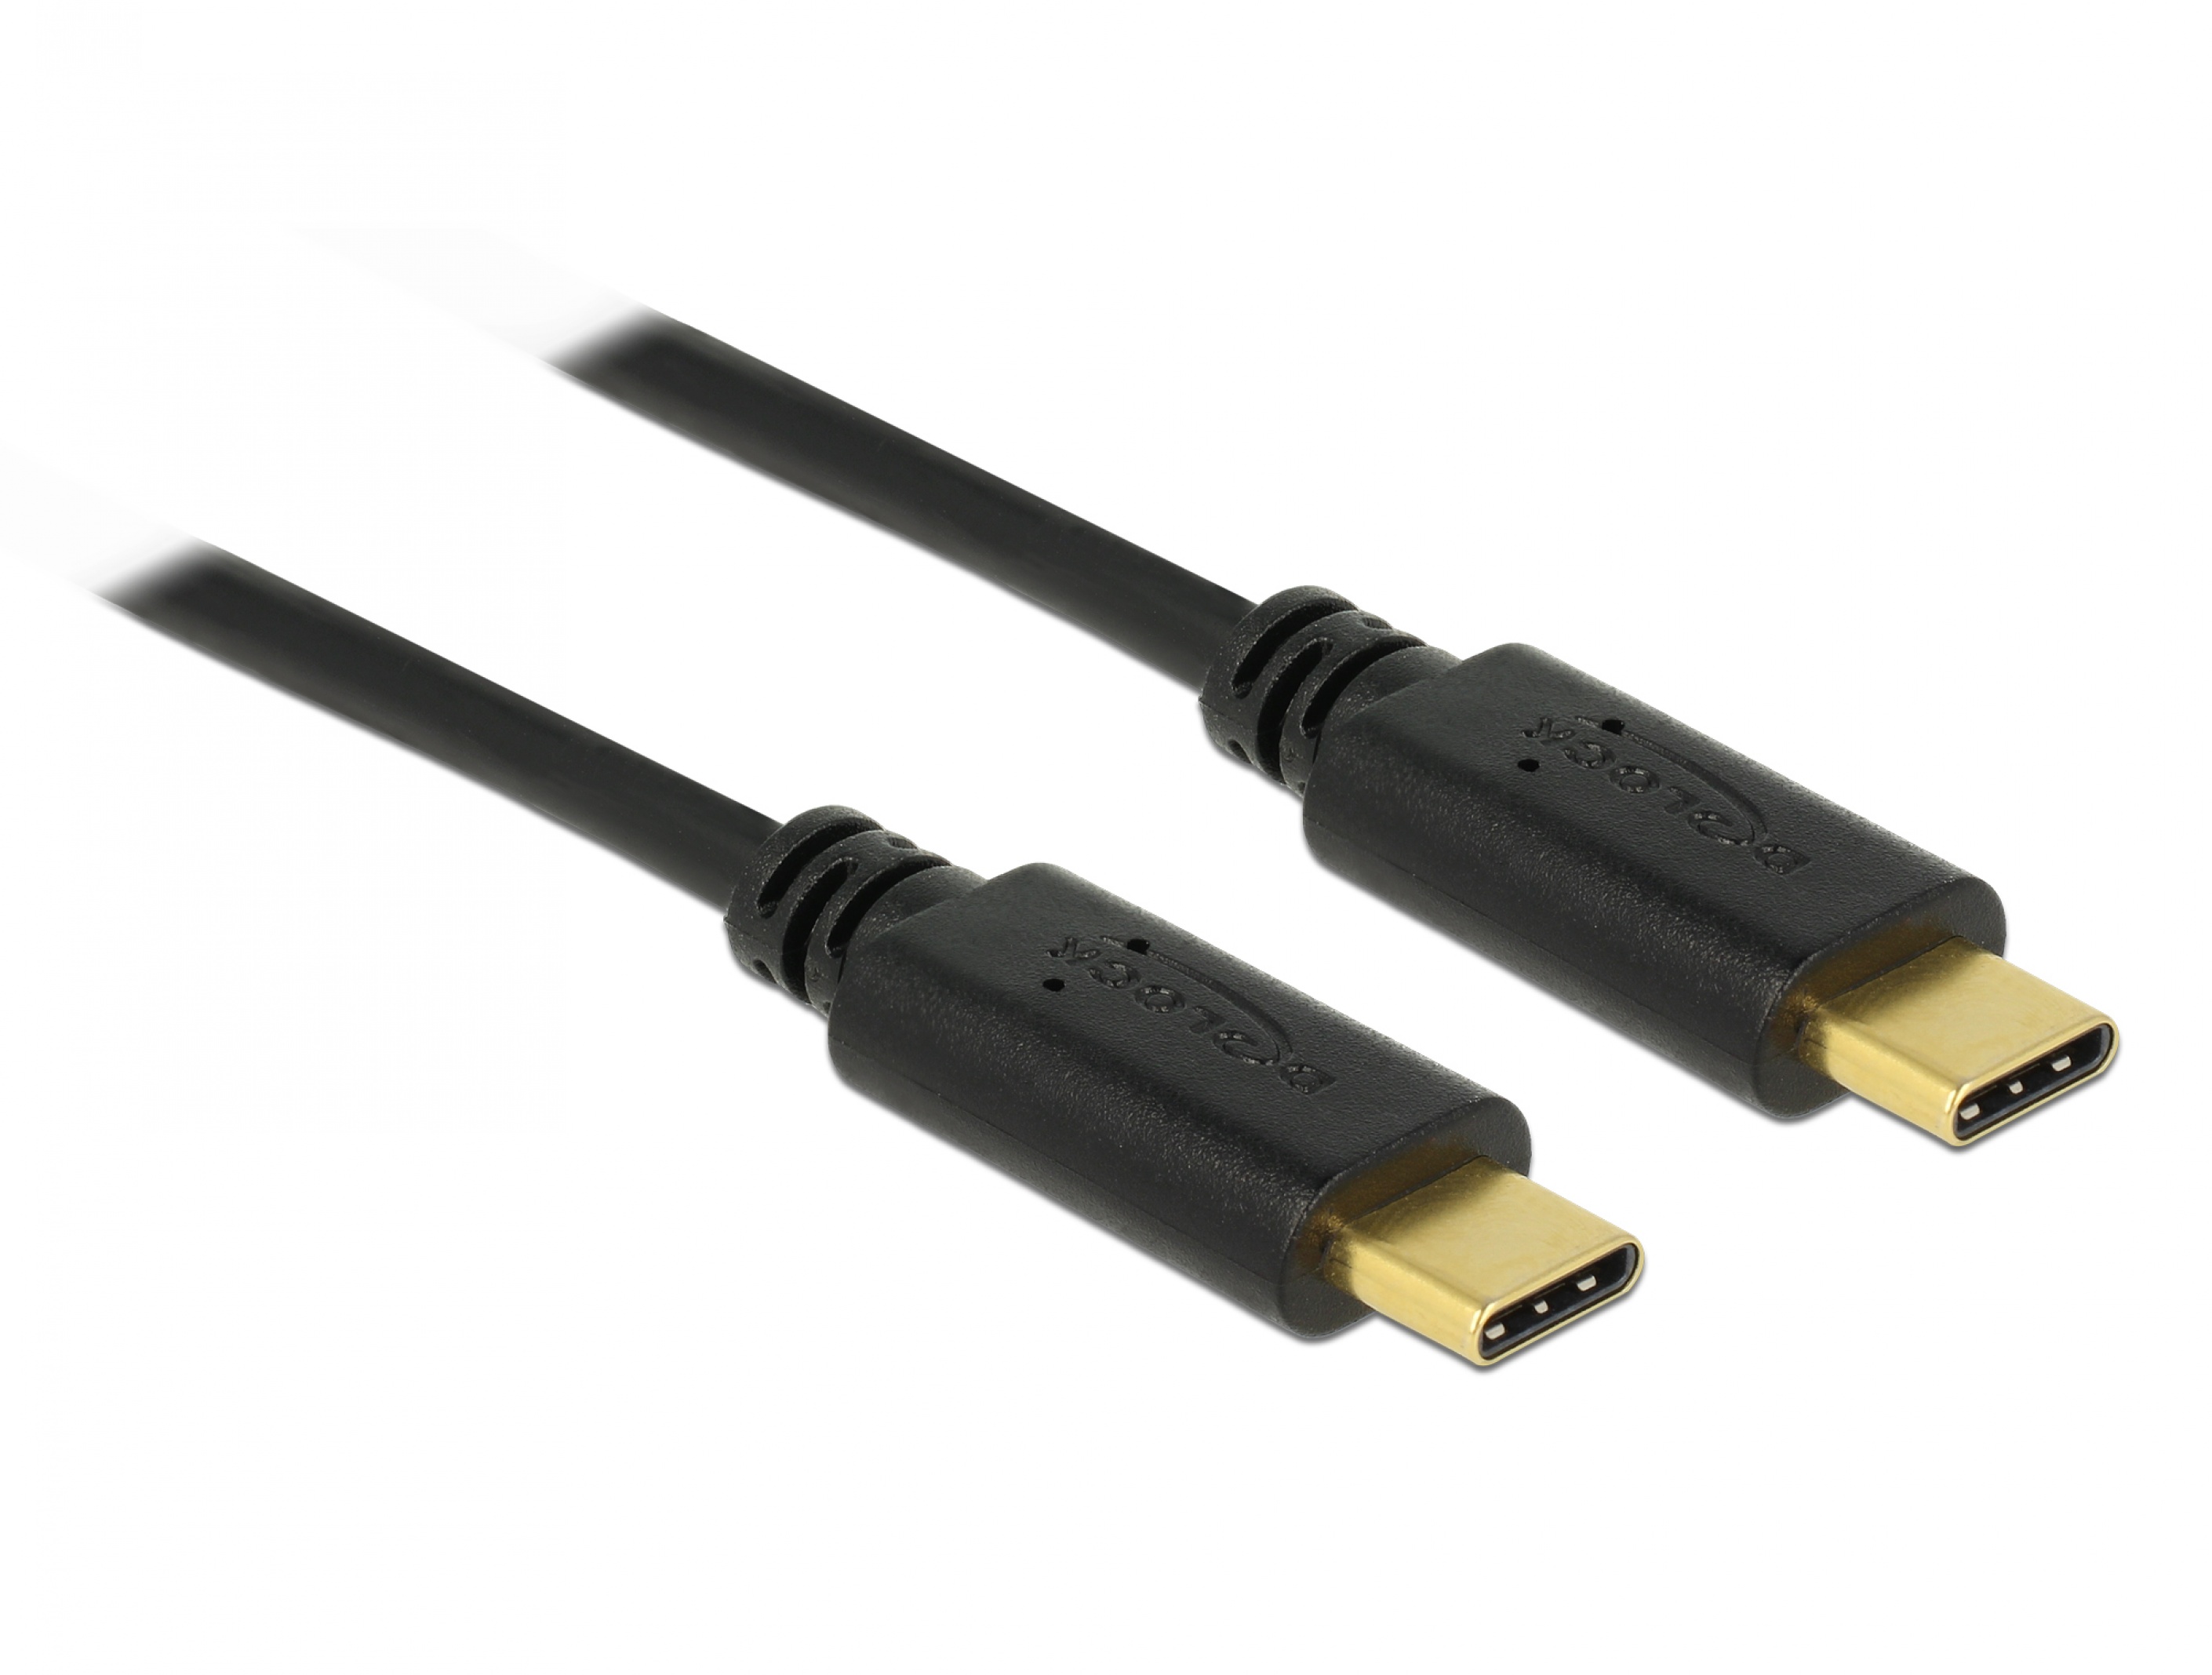 Dictate software Night Cablu USB 2.0 Tip C la tip C T-T 1m 5A E-Marker, Delock 83323